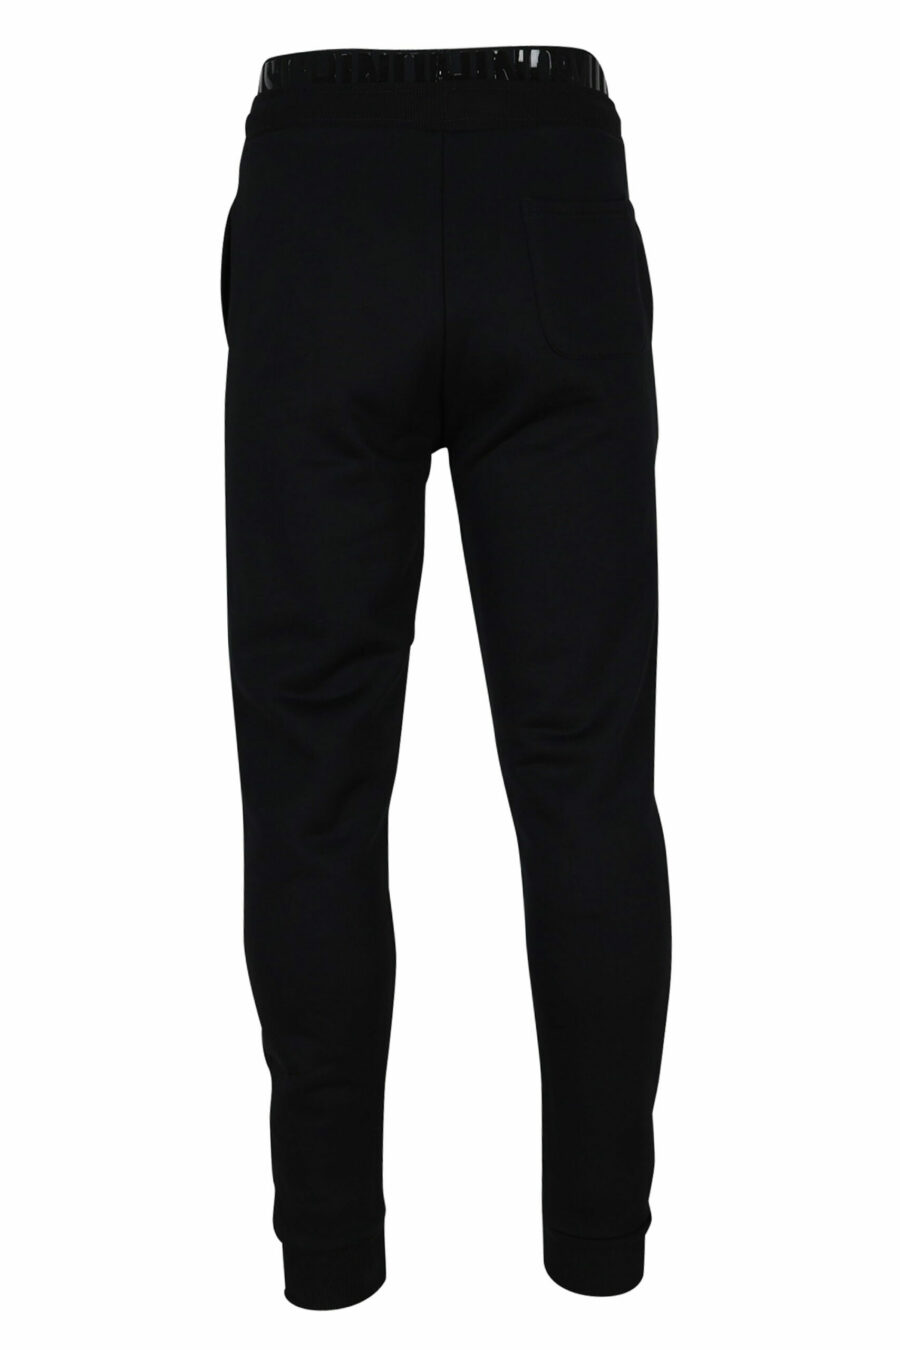 Pantalón de chándal con logo monocromático en cinta en cintura - 667113016740 2 scaled